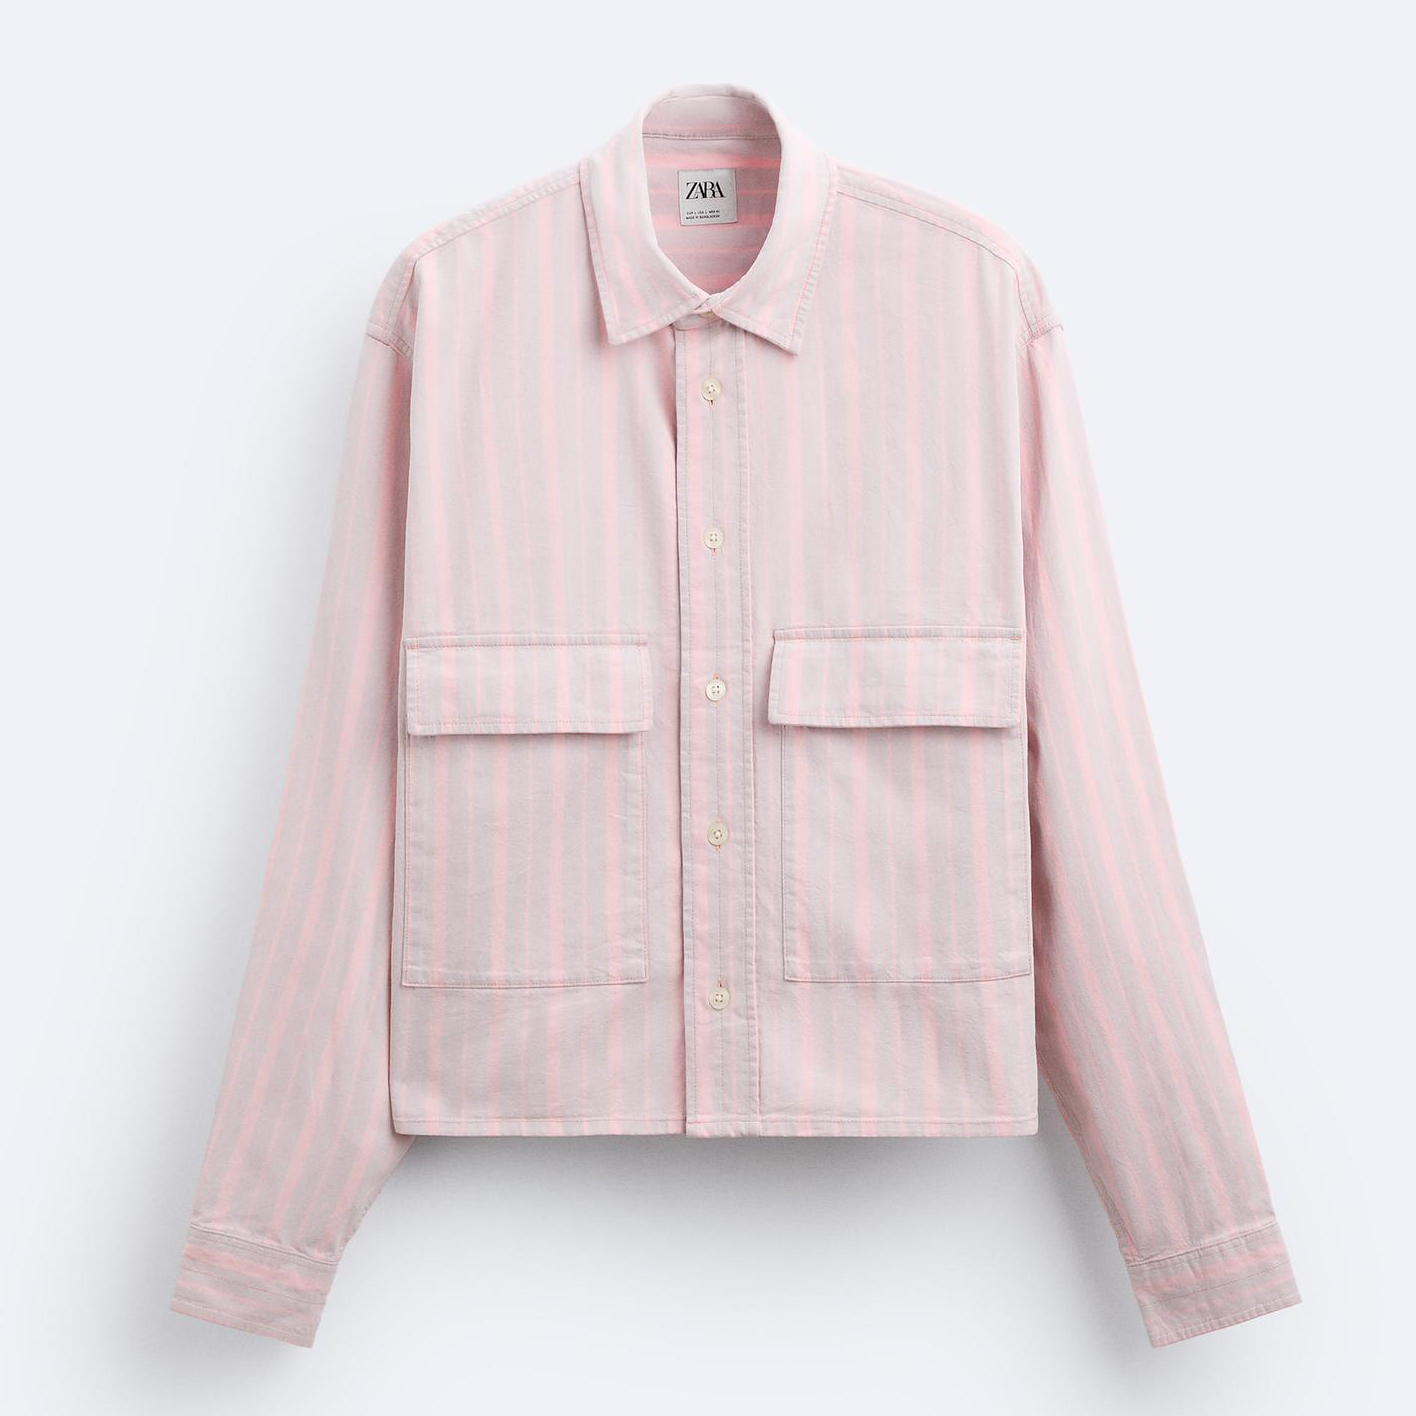 Рубашка Zara Cropped Striped, розовый рубашка zara cropped striped голубой белый